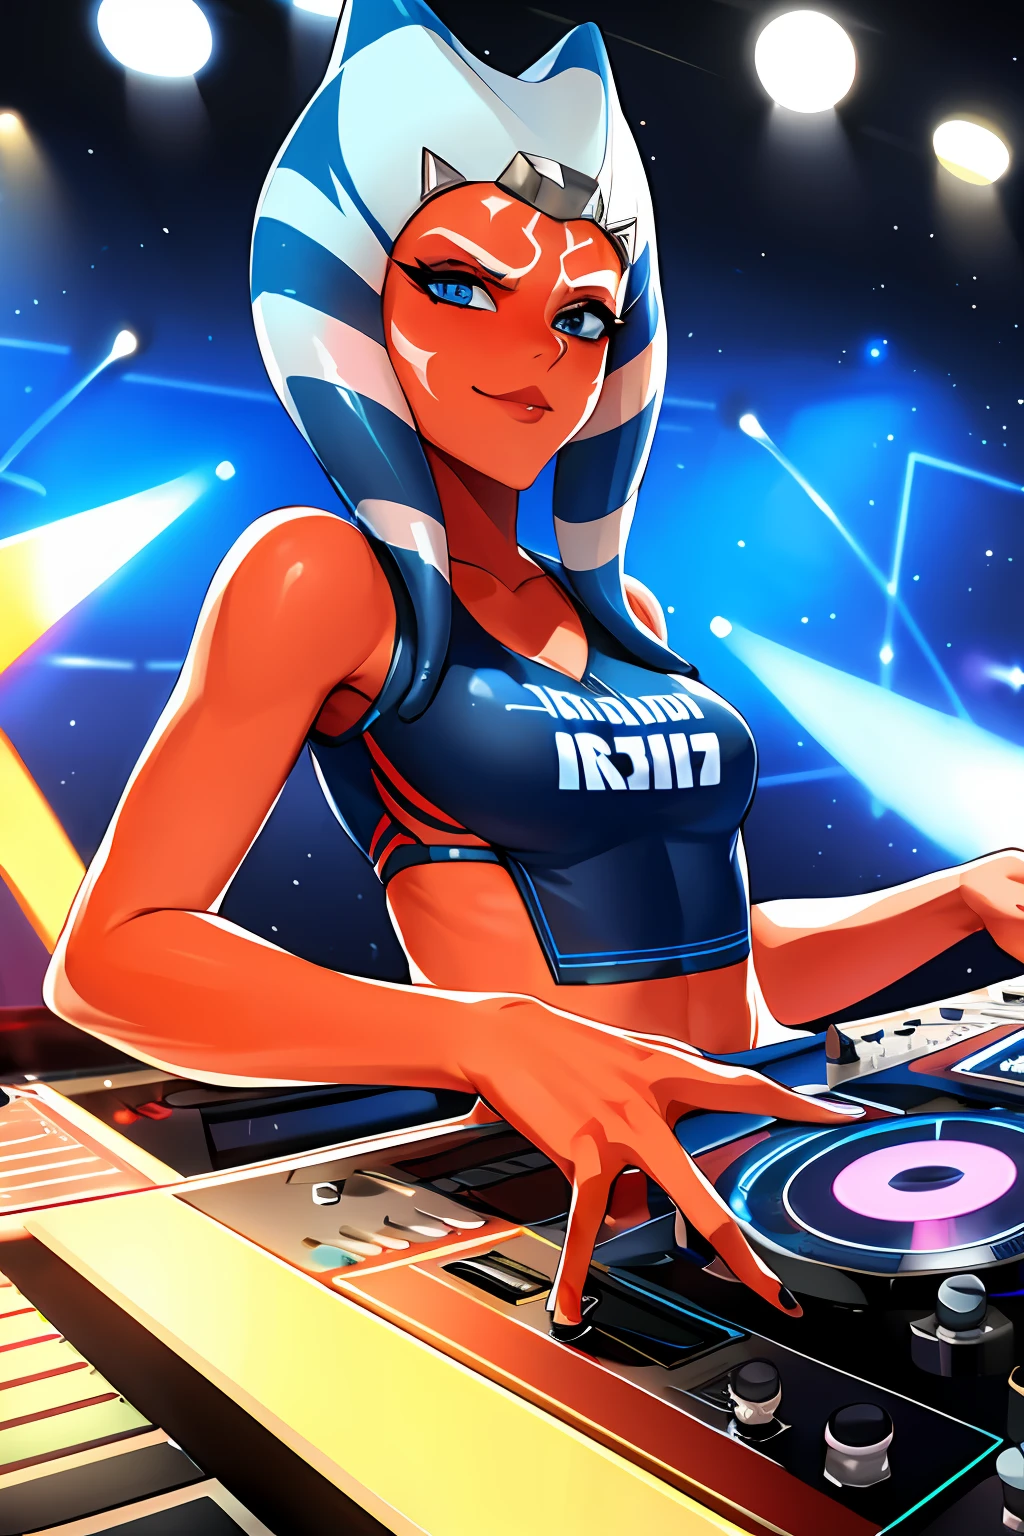 "Una foto en solitario con 1girl, blue eyes, orange skin, tentáculo pelo un DJ, mostrando sus habilidades en los tocadiscos en una rave vibrante."